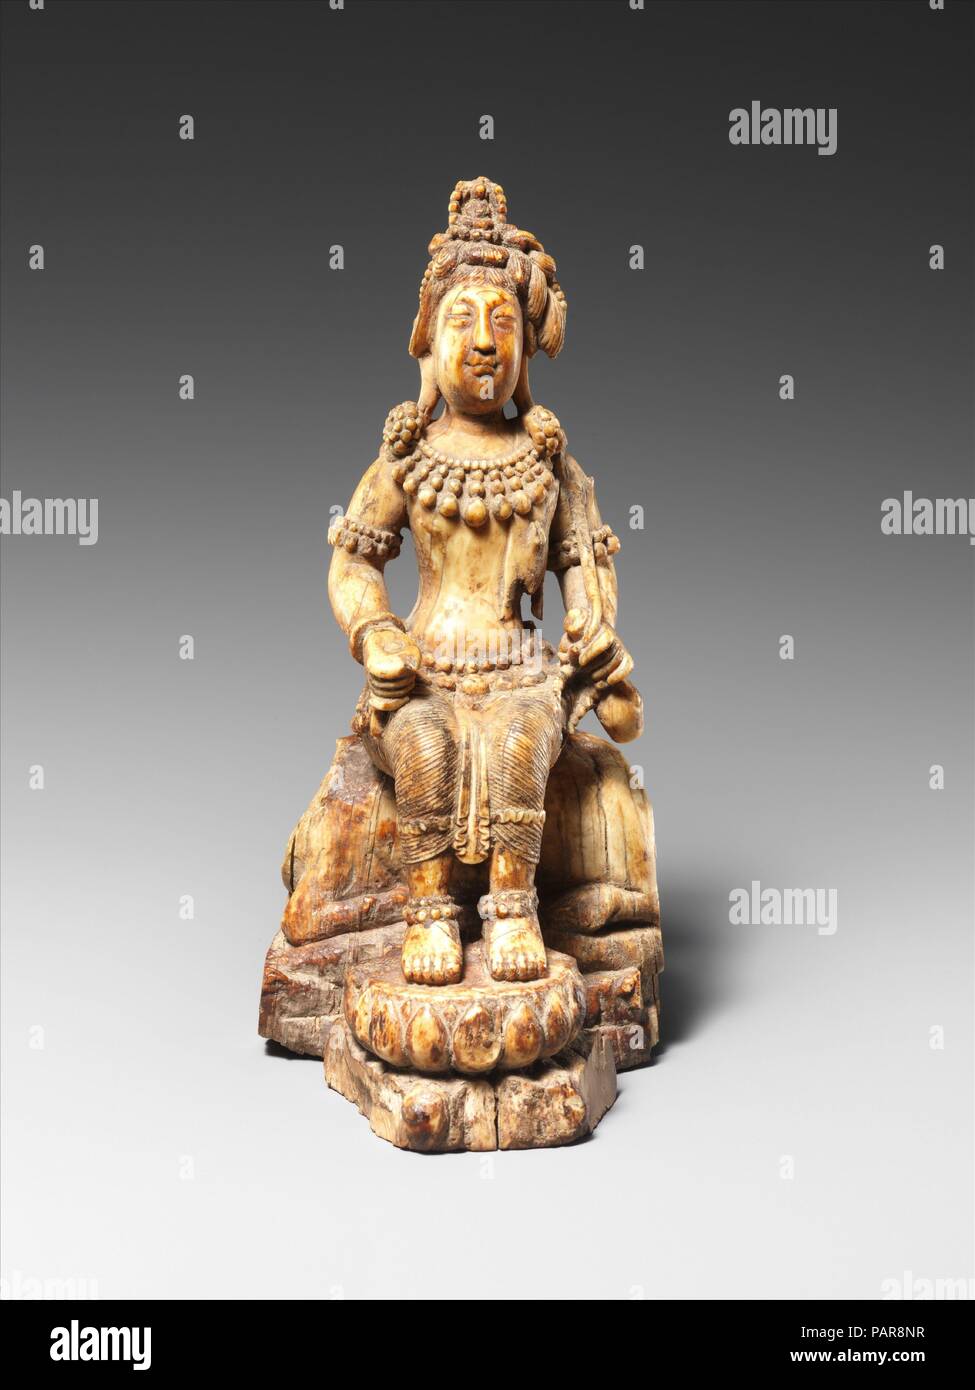 Avalokiteshvara, il Bodhisattva della compassione infinita. Artista: attribuito a Chosying Dorje (il decimo Karmapa) (1604-1674). Cultura: Il Tibet. Dimensioni: H. 6 3/4 in. (17,1 cm); W. 3 3/8 in. (8,6 cm); D. 3 1/2 in. (8,9 cm); Wt. 1 lb (0,5 kg). Data: del xvii secolo. Questa immagine appartiene ad un piccolo gruppo di sculture e dipinti che si pensa sia stata fatta da Chosying Dorje (1604-1674), il decimo Karmapa e capo spirituale della scuola Kagyu del buddhismo tibetano. È in stile del Kashmir, che riflette le influenze interregionale sul luogo di lavoro attraverso il Tibet. Museo: Metropolitan Museum of Art di New York, Stati Uniti d'America Foto Stock